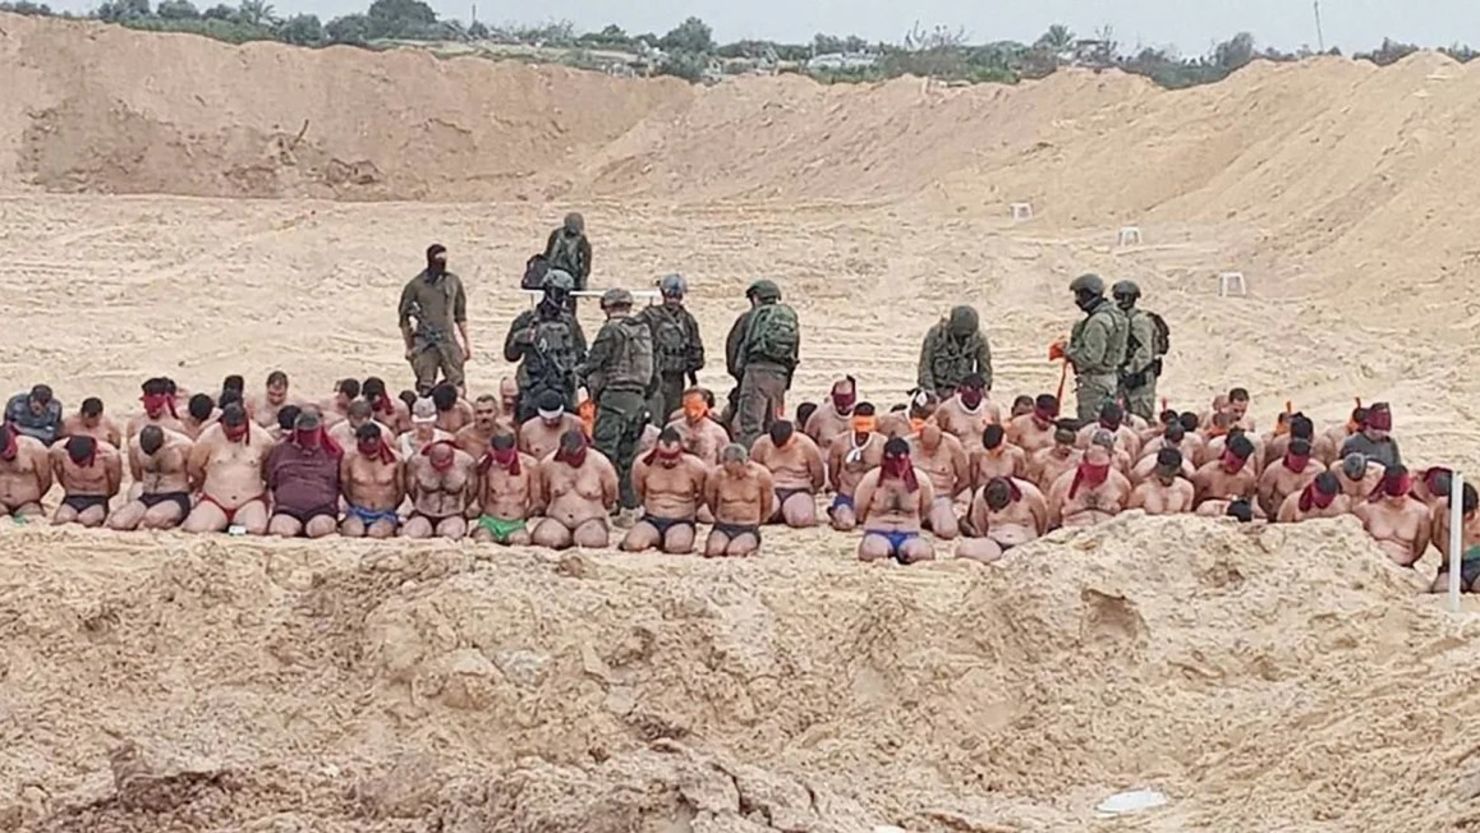 Imágenes muestran una detención masiva del Ejército de Israel a hombres que fueron obligados a quedar en ropa interior.